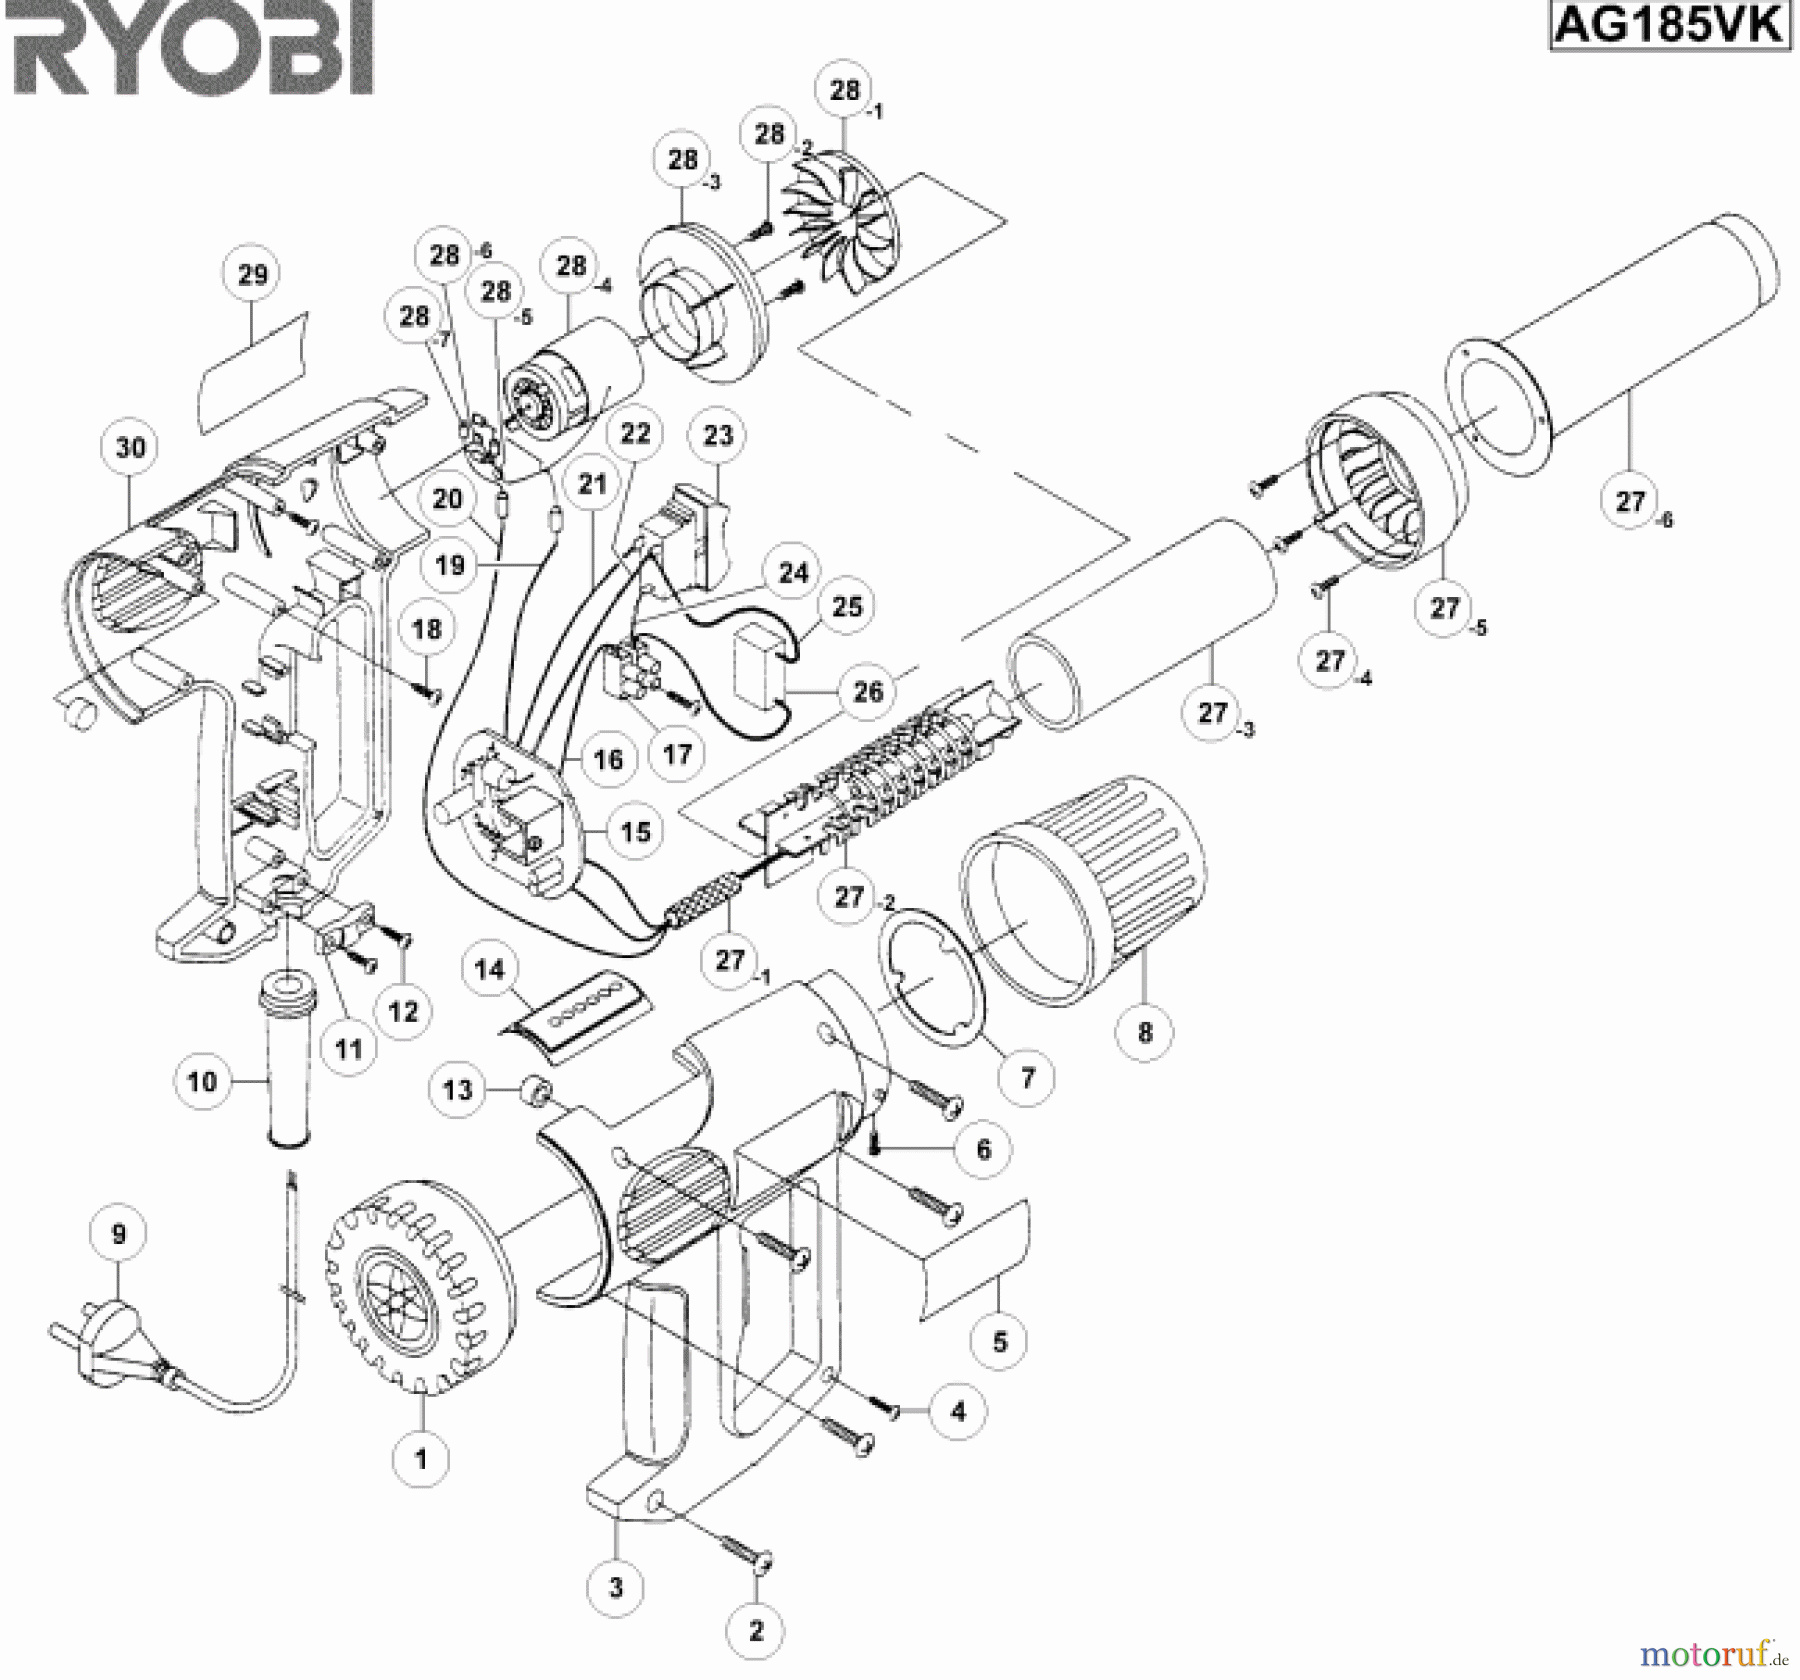  Ryobi Heißluftgebläse AG185VK